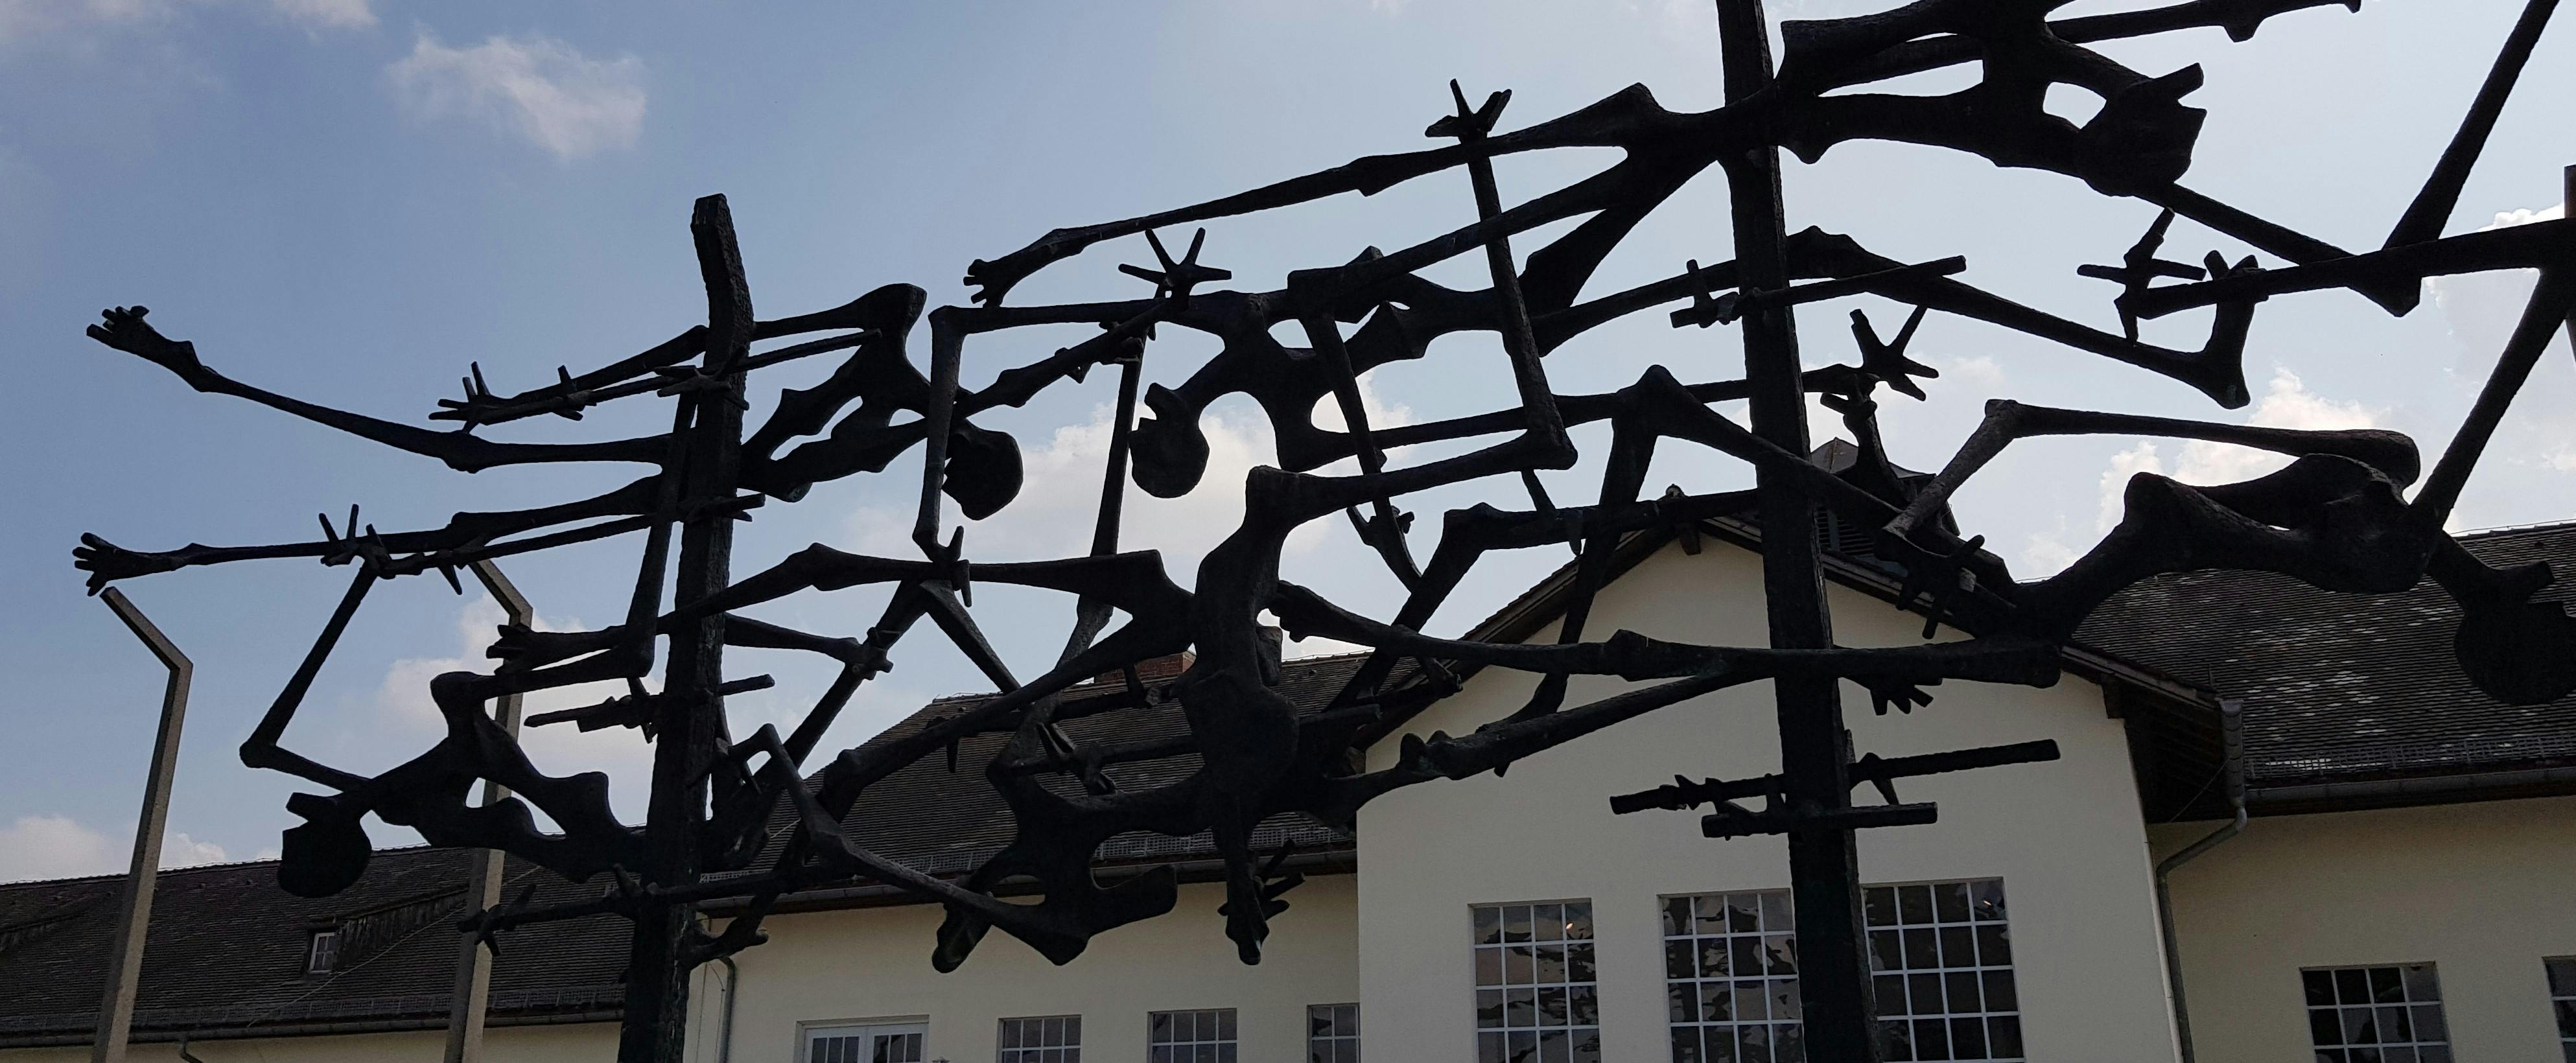 Begeleide excursie naar Dachau concentratiekamp memorial vanaf München